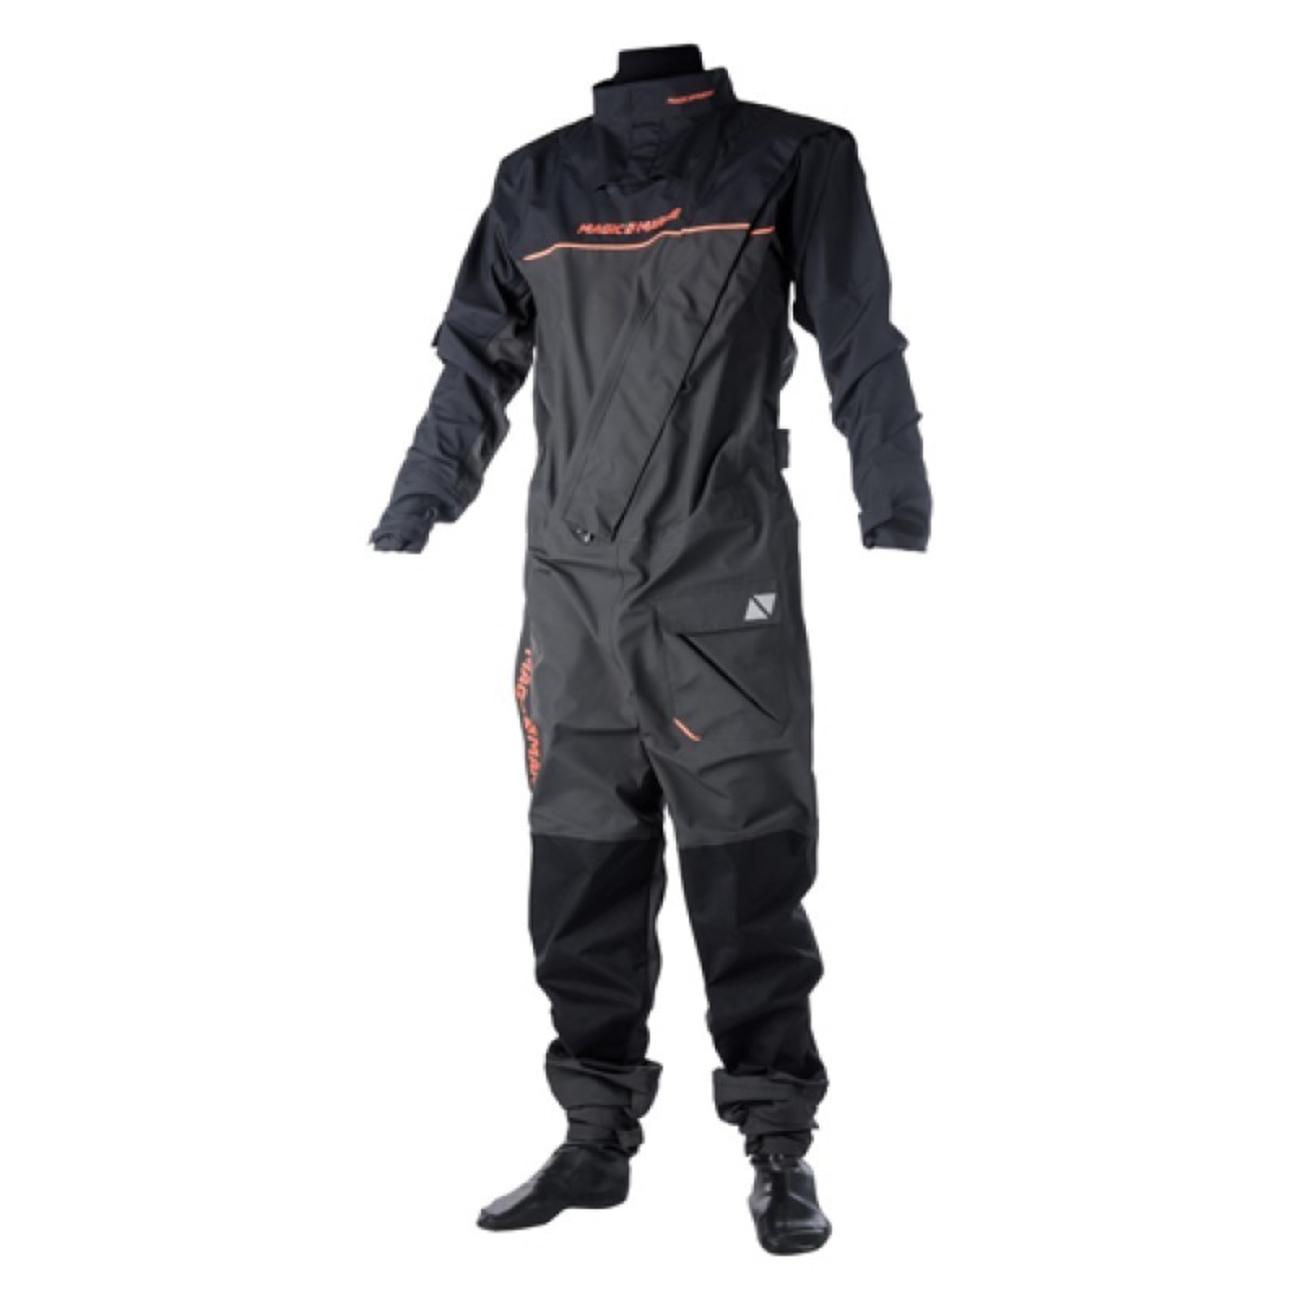 メンズ マリンスポーツウェア ドライスーツ Regatta Drysuit Fzip フロントジップ シェルドライスーツ 【15000.